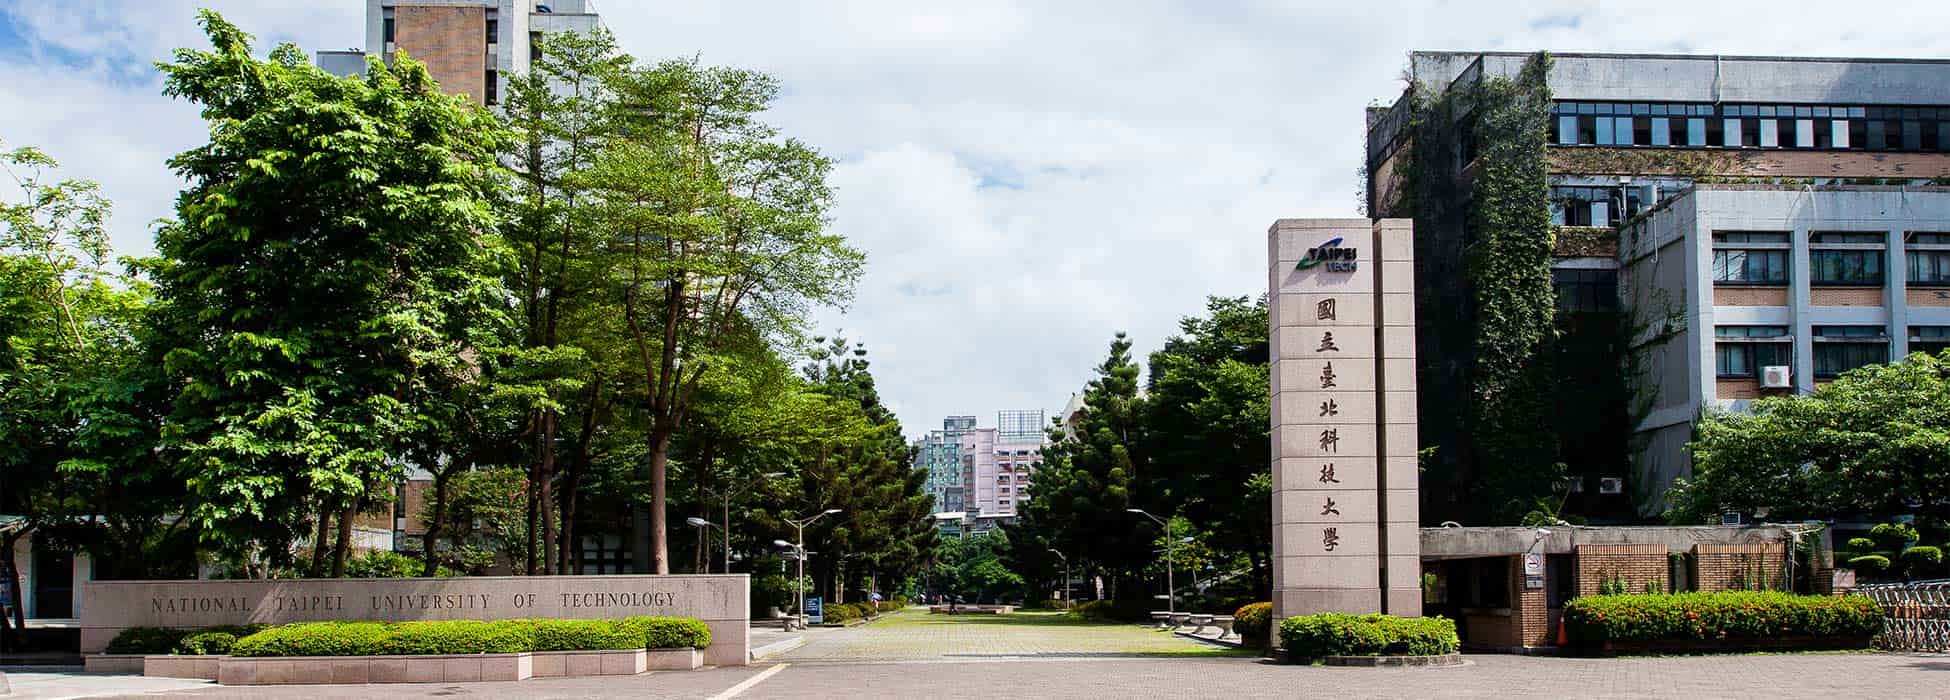 منحة جامعة تايبيه الوطنية للتكنولوجيا لدراسة الماجستير والدكتوراه في تايوان 2021 (ممولة)